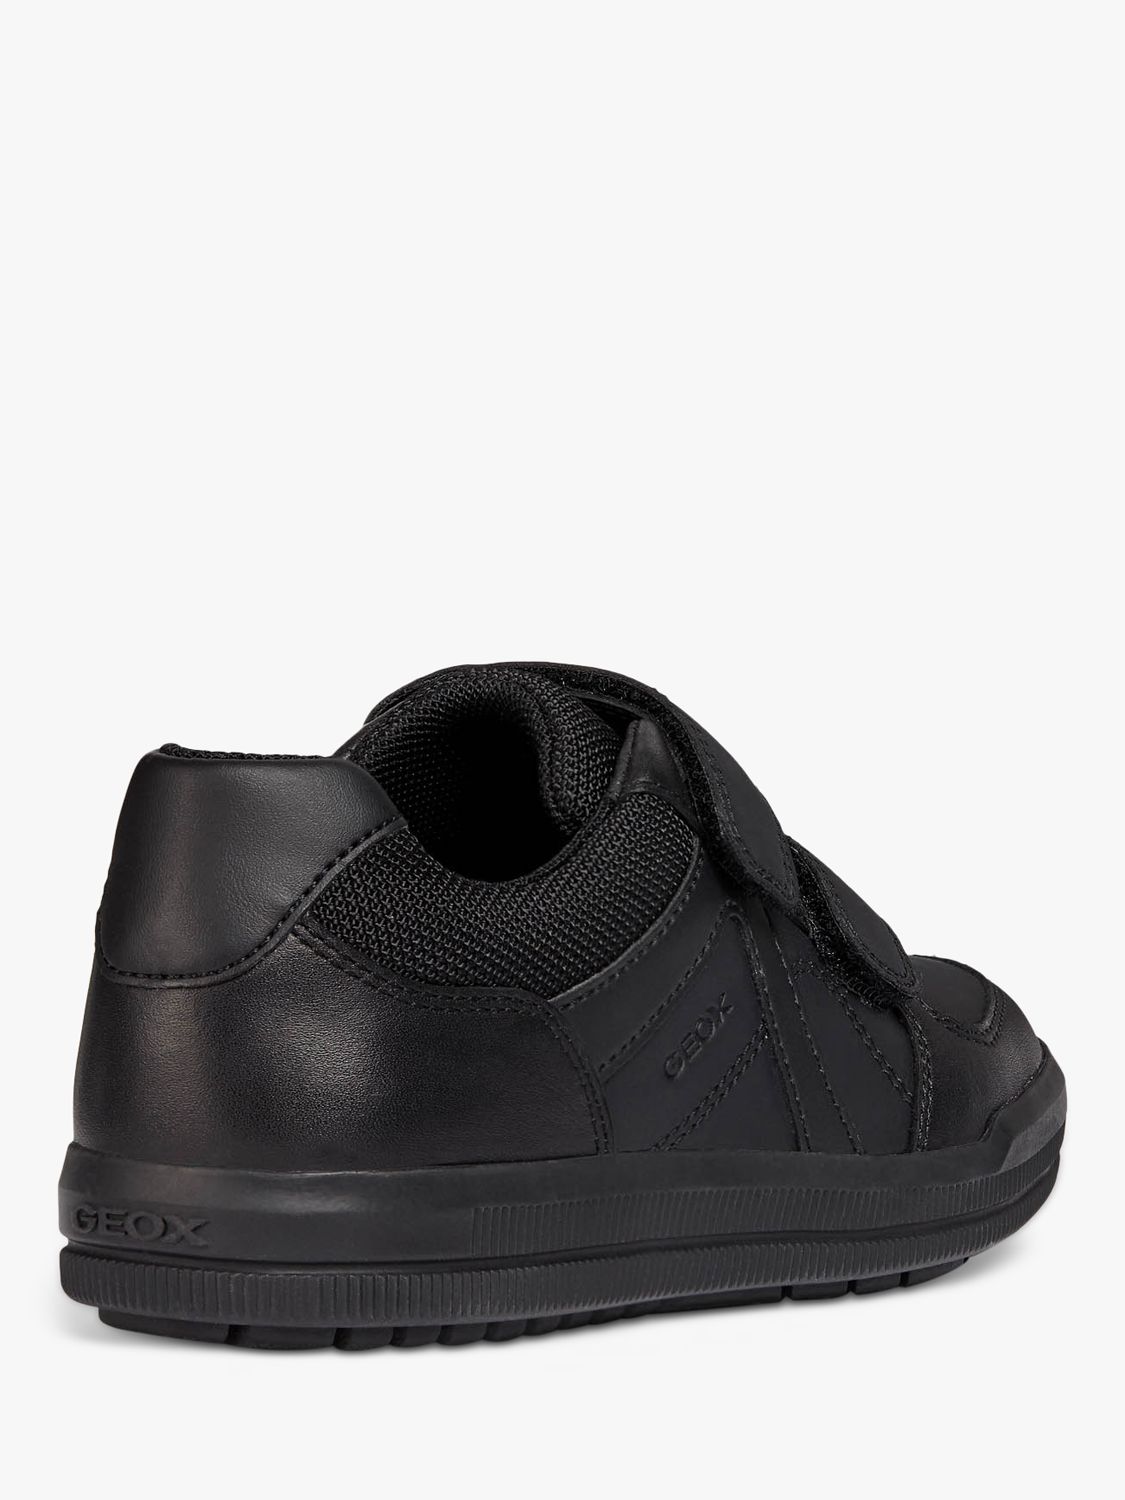 Geox Kids' J Arzach B.E School Shoes, Black, 33